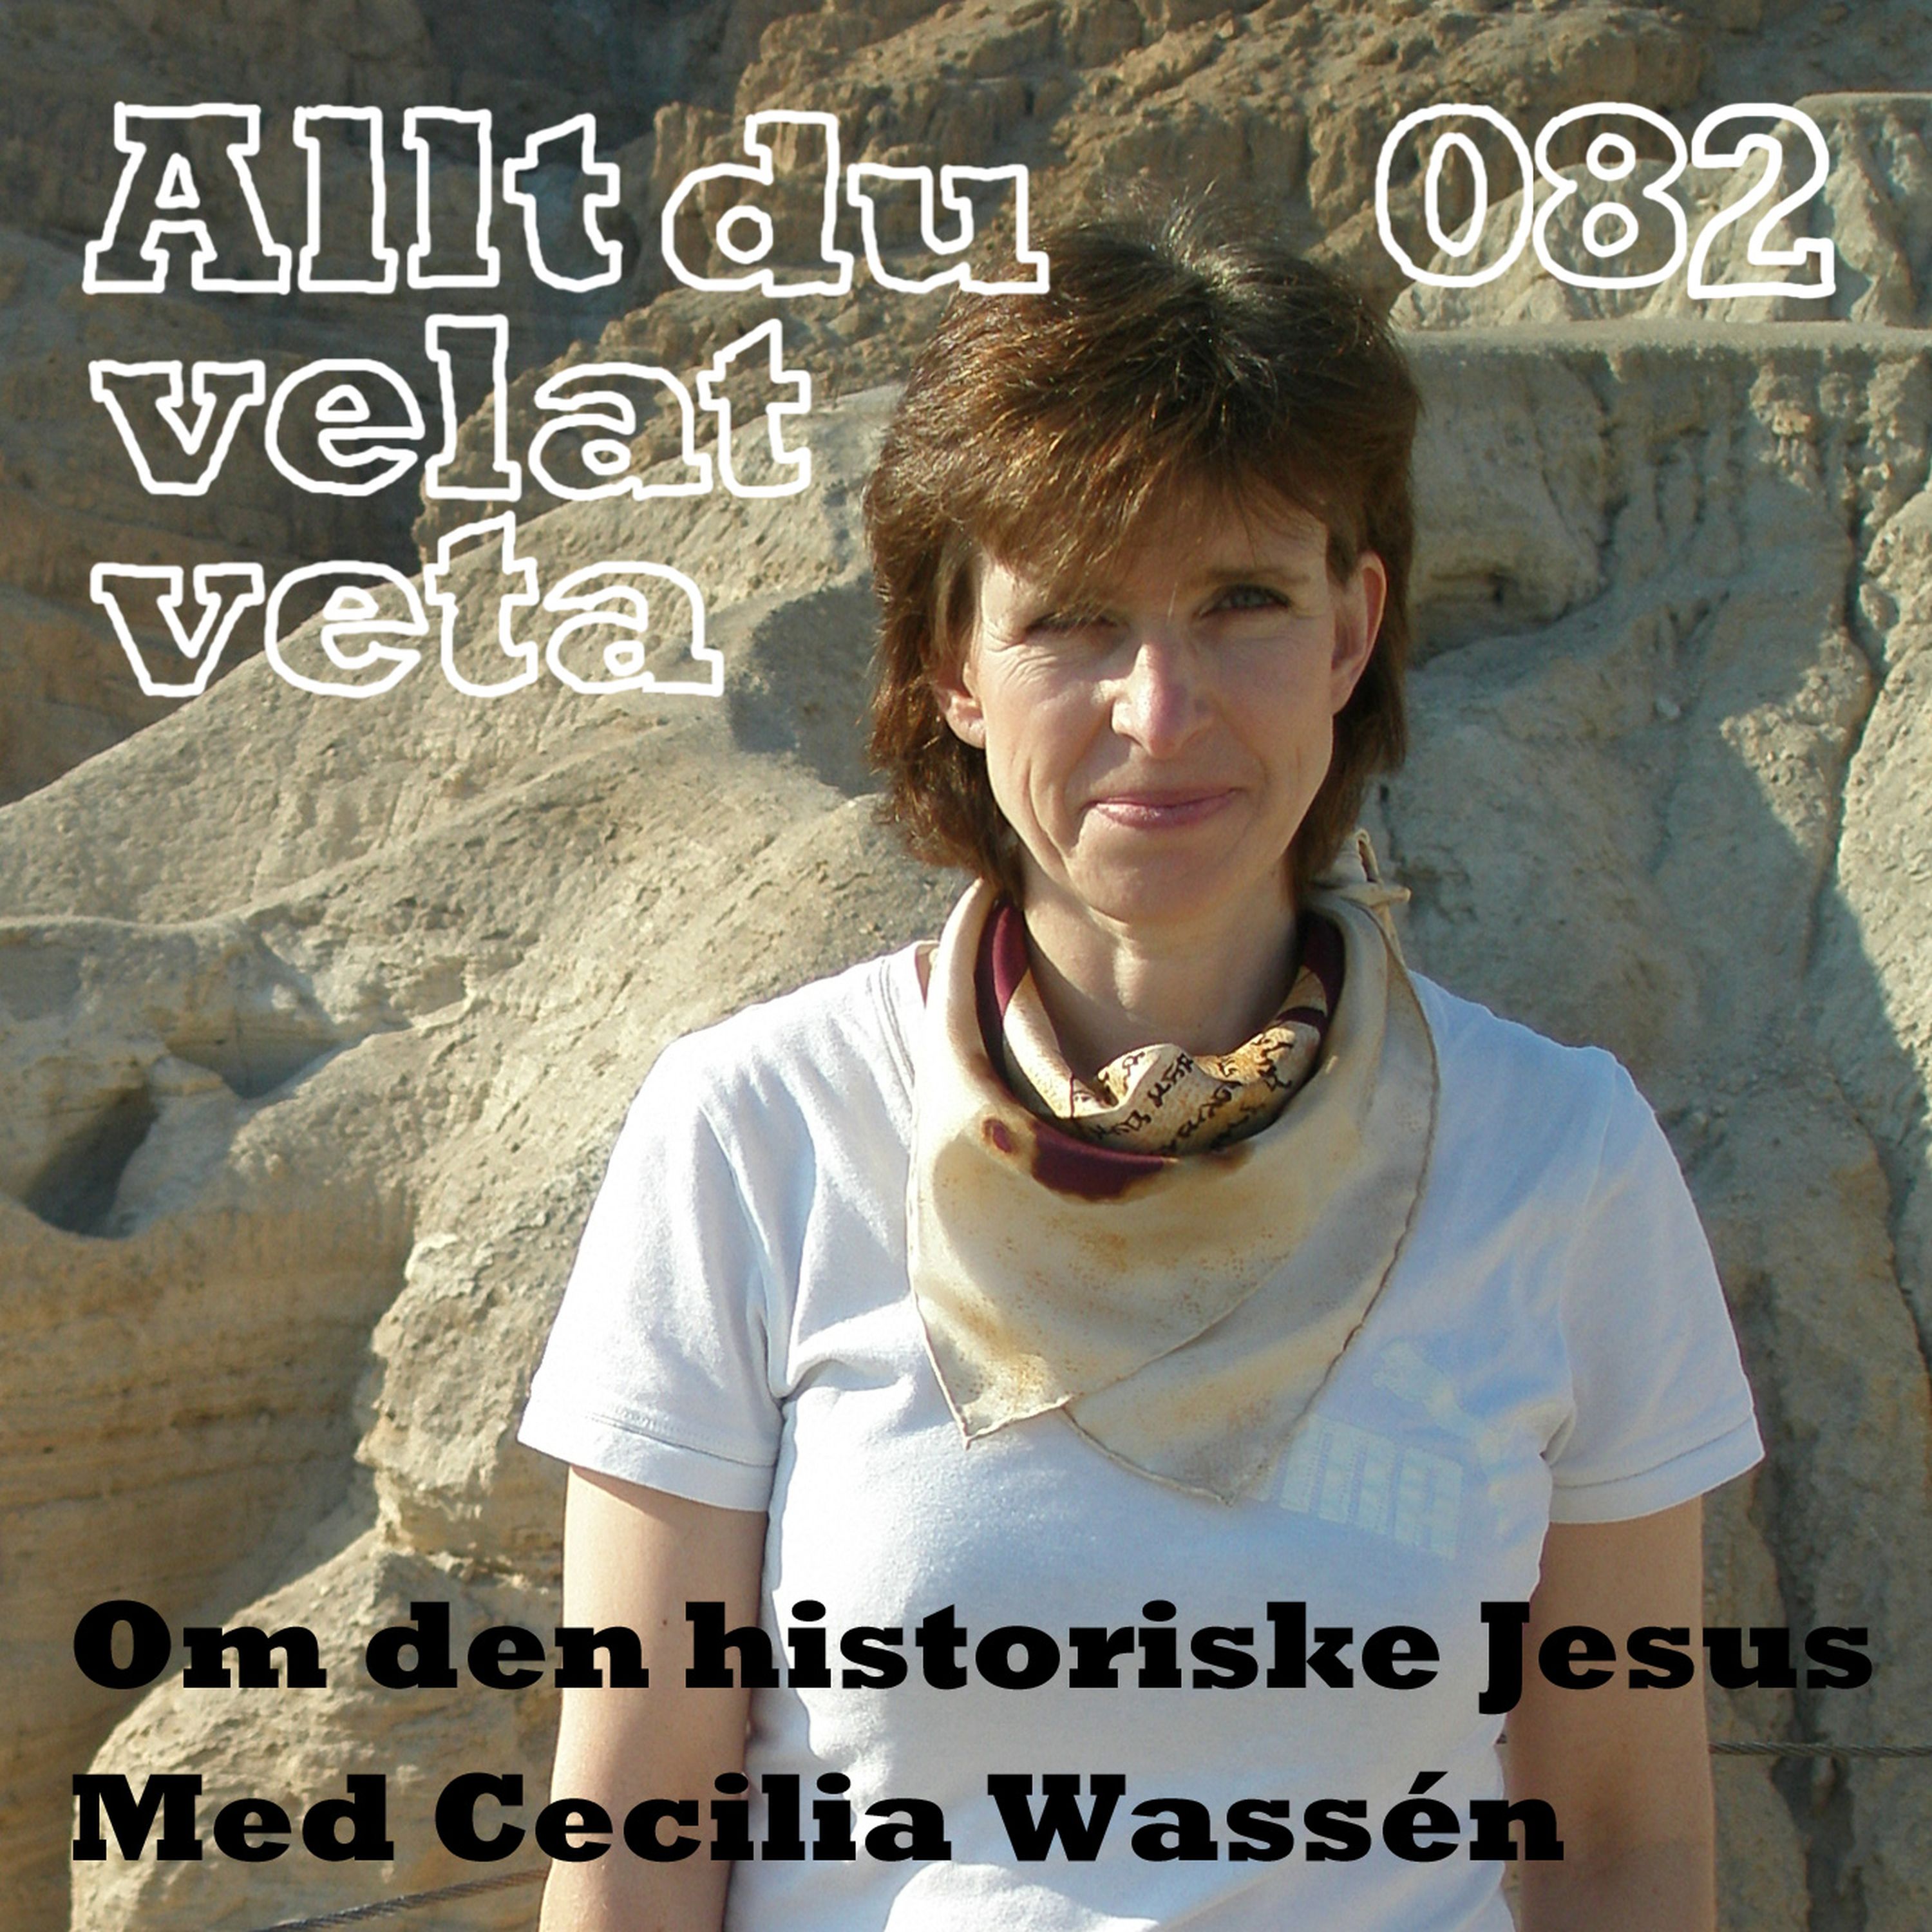 082 Om den historiske Jesus med Cecilia Wassén